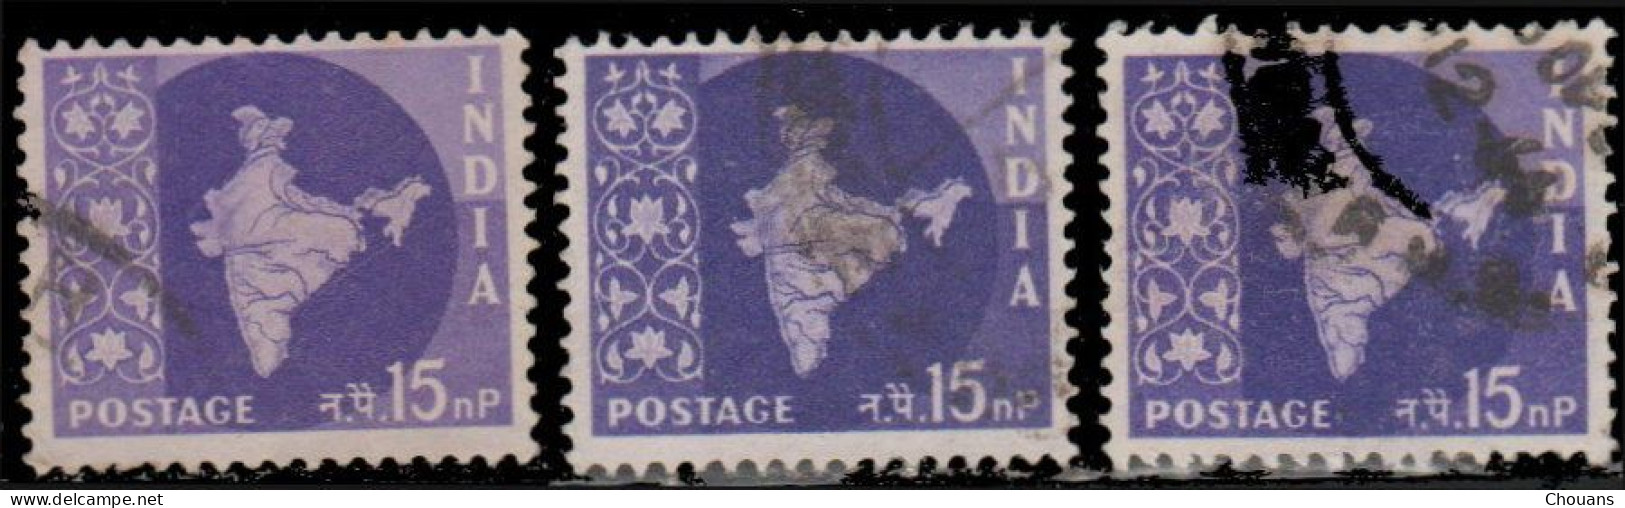 Inde 1957. ~ YT 74/82 - Carte De L'Inde (10 V.) - Gebraucht